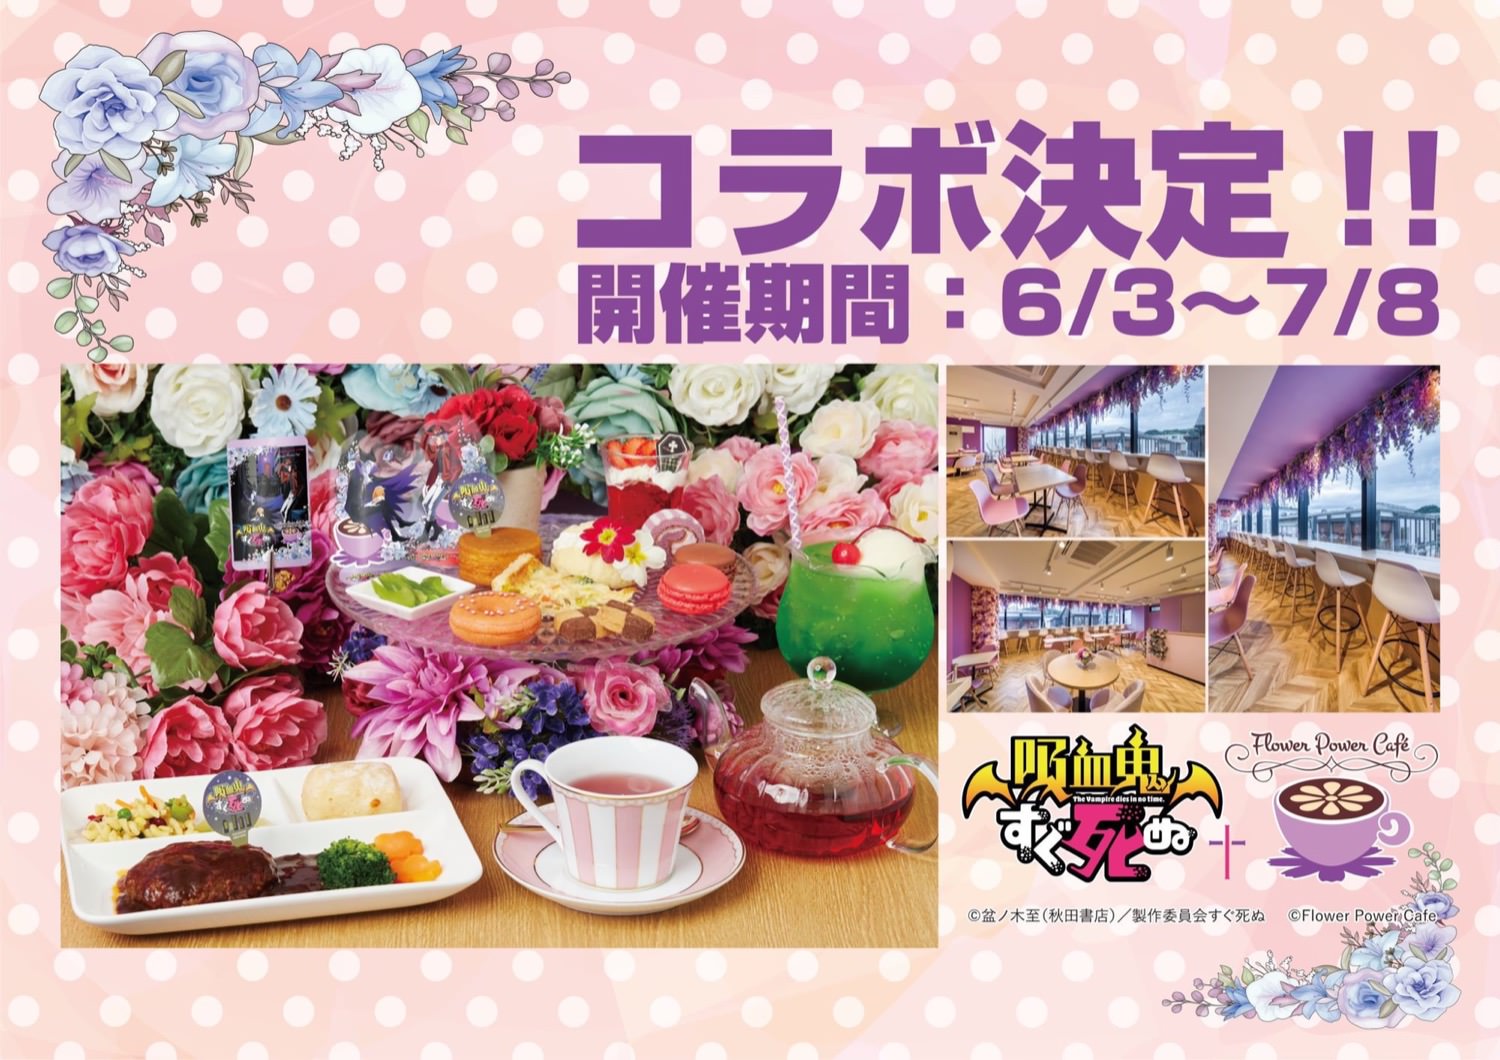 吸血鬼すぐ死ぬカフェ in Flower Power Cafe鎌倉 6月3日よりコラボ開催!